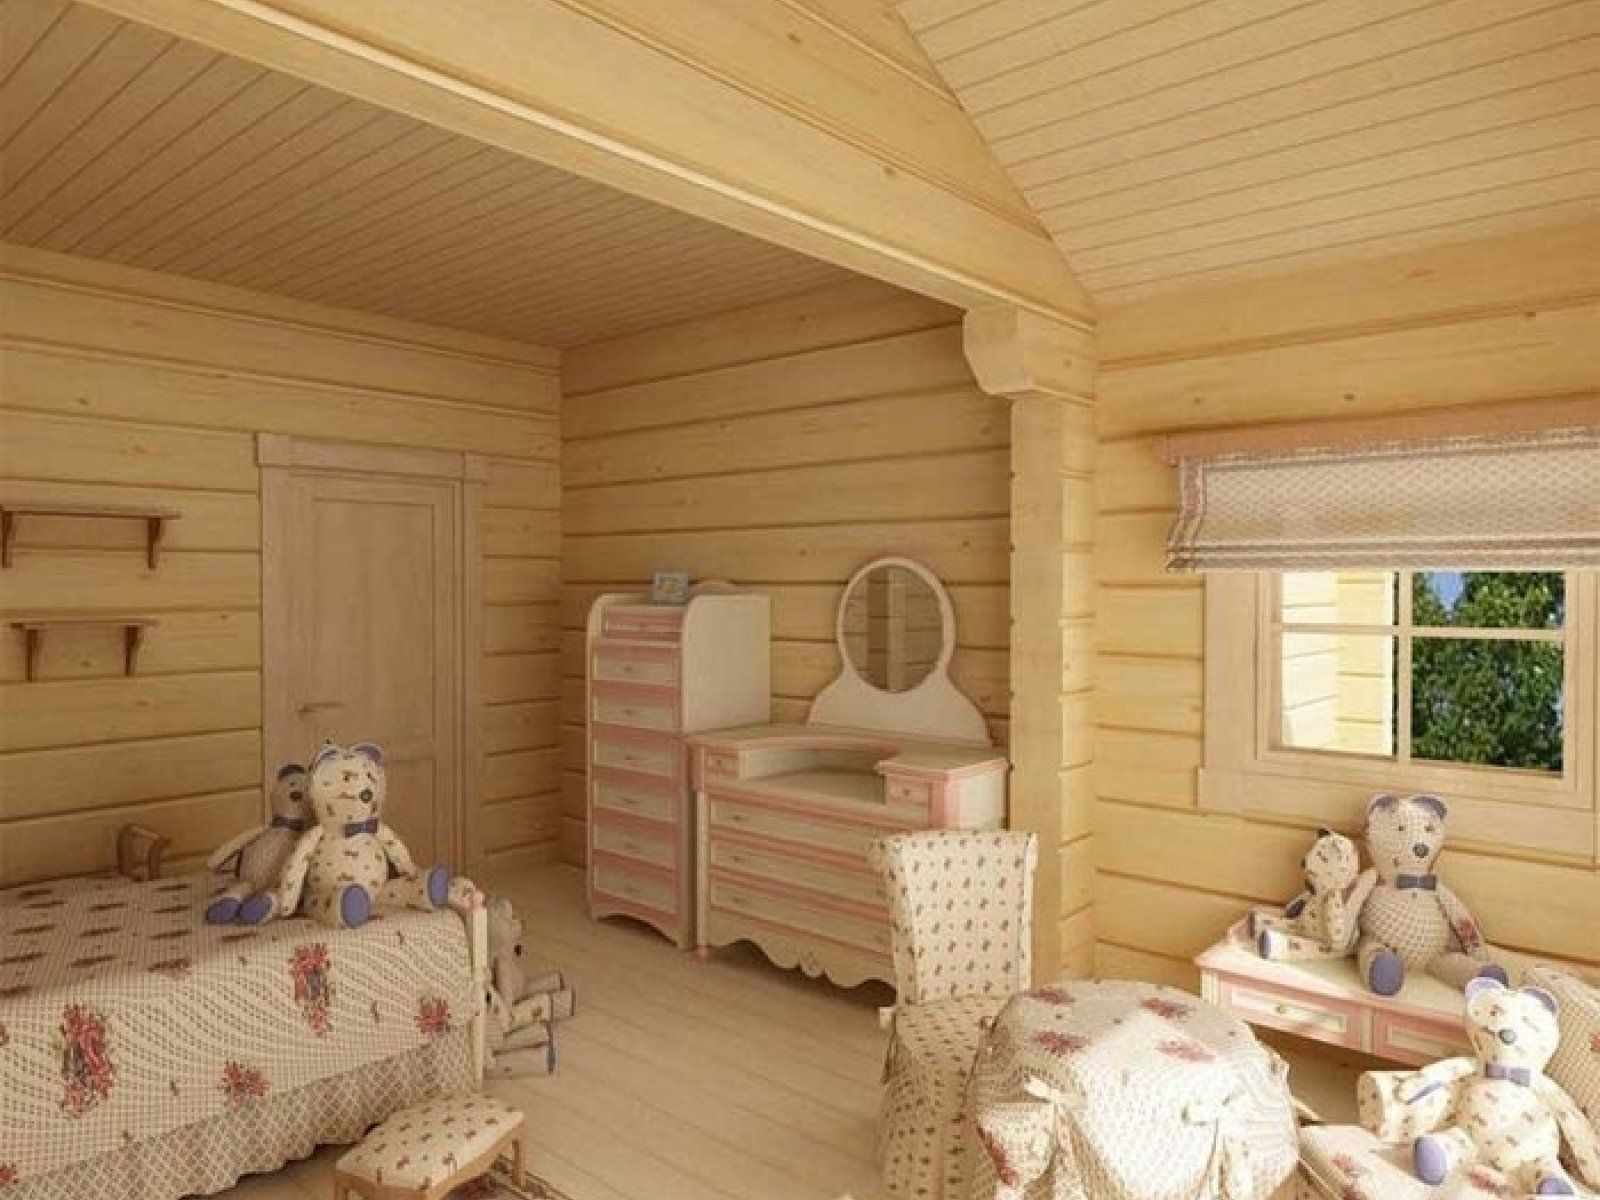 Интерьер детской комнаты в деревянном доме » Картинки и фотографии .